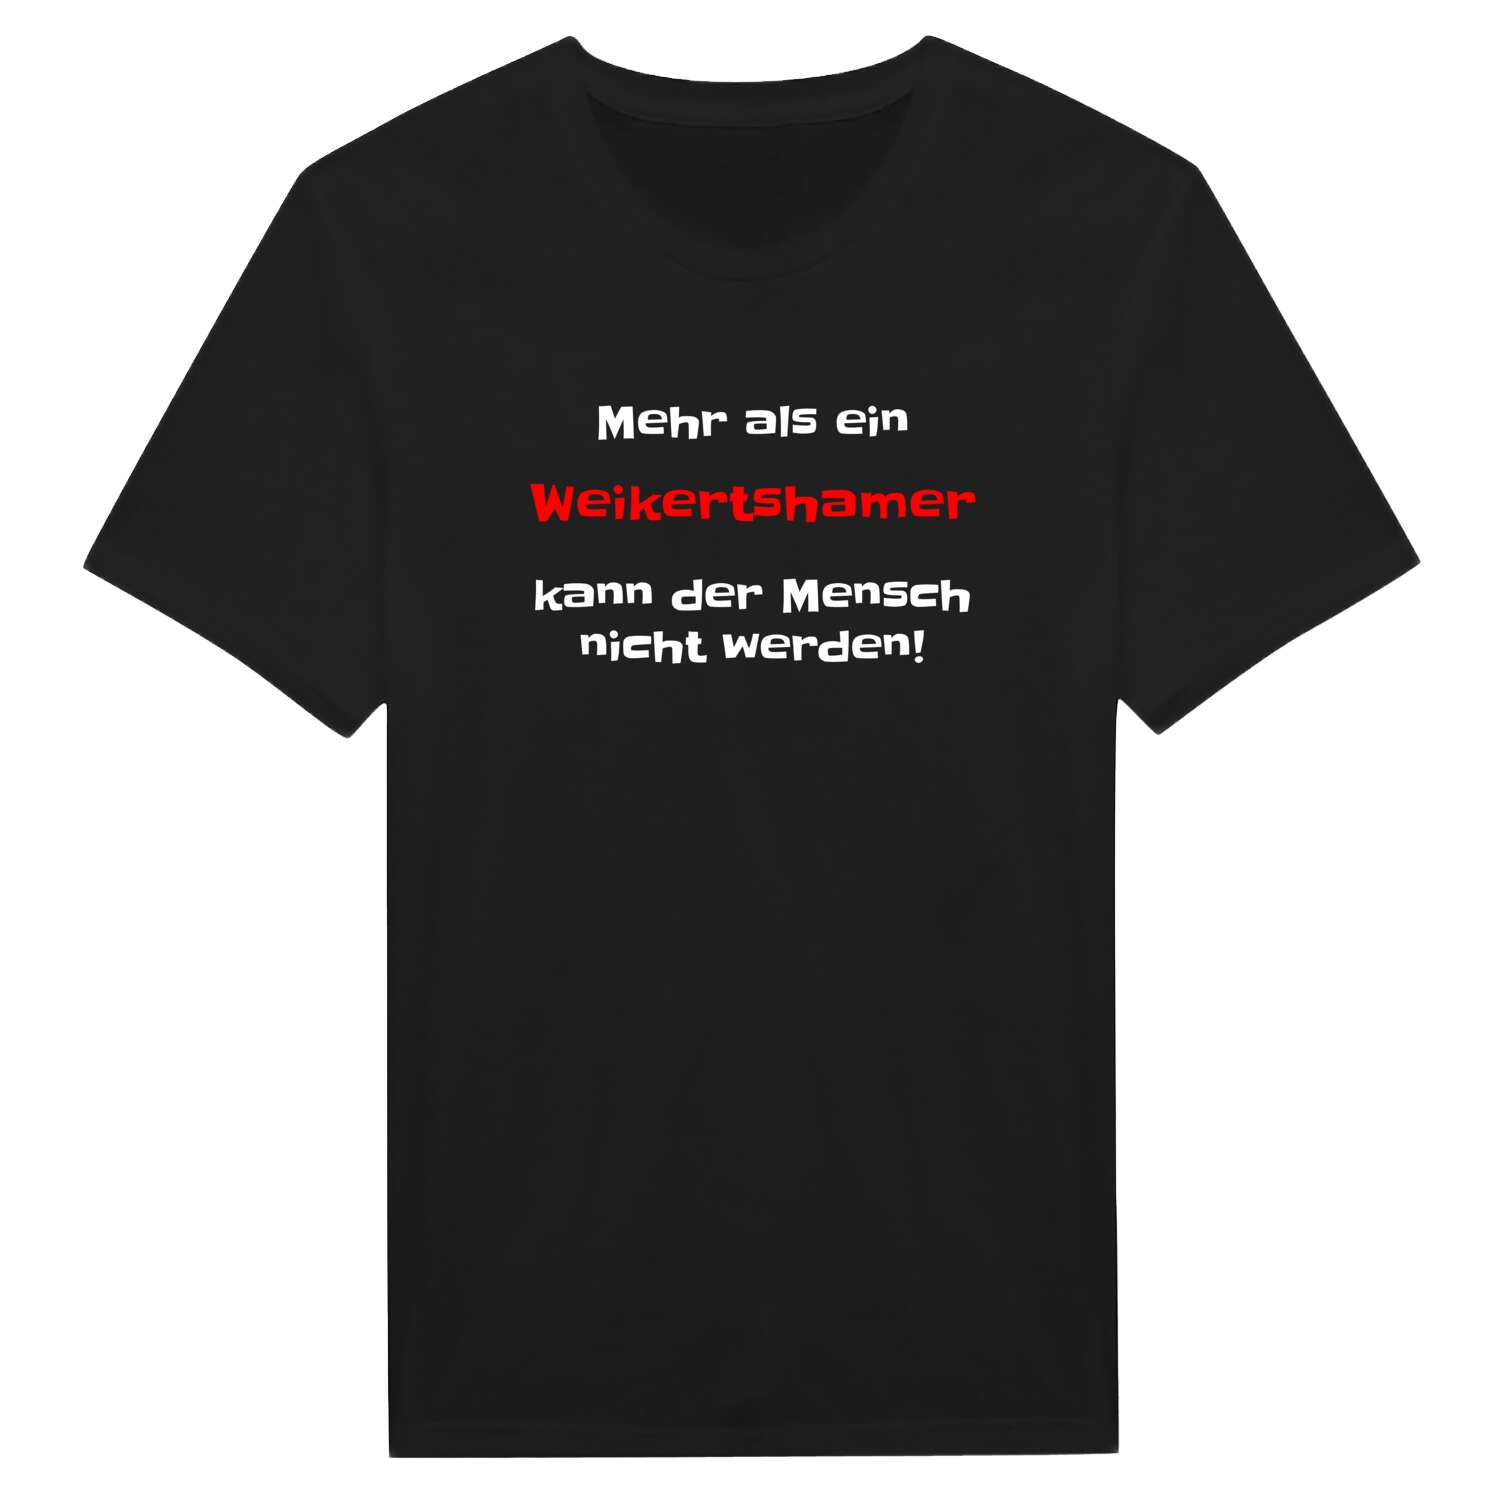 Weikertsham T-Shirt »Mehr als ein«